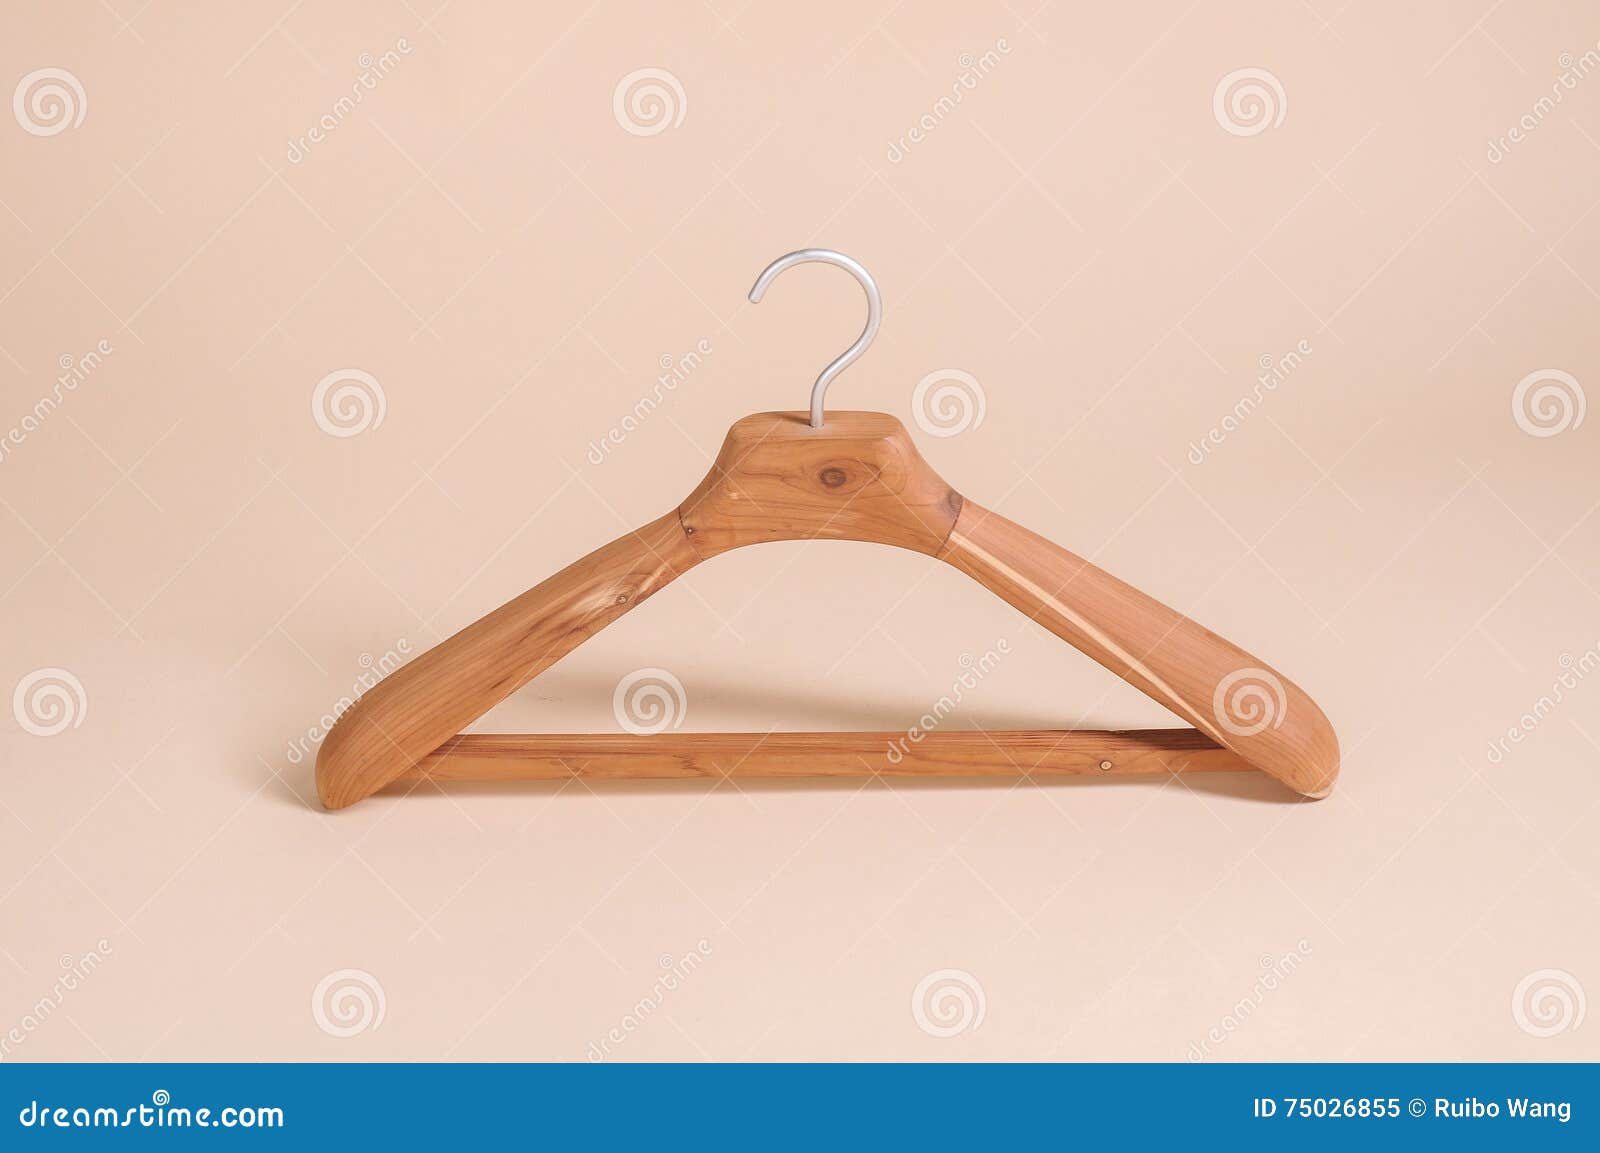 clothes hange